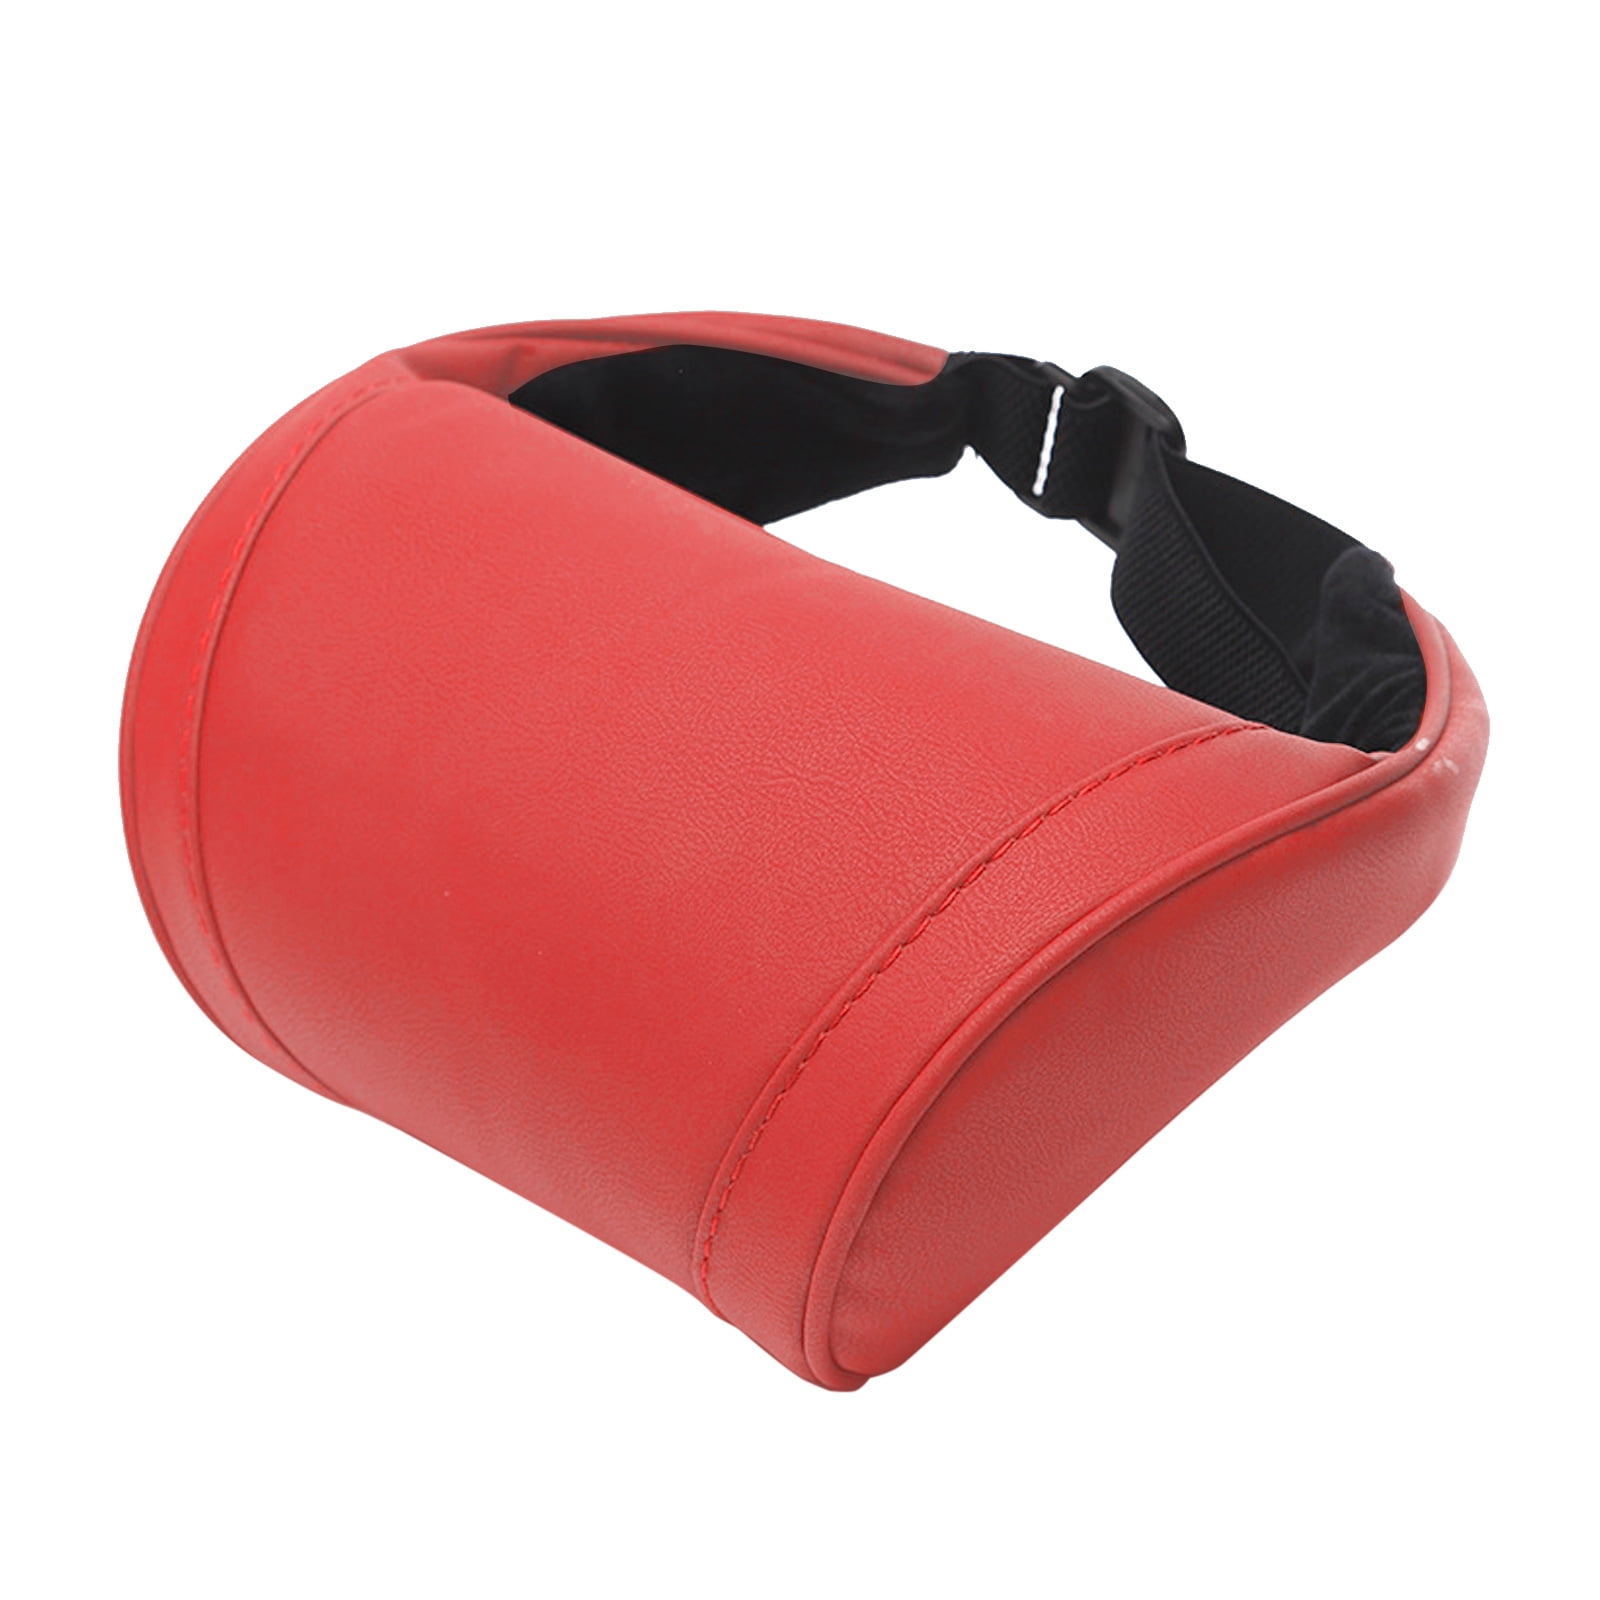 Cloudmall Tesla Headrest Pillow 2 Packs – CLOUDMALL